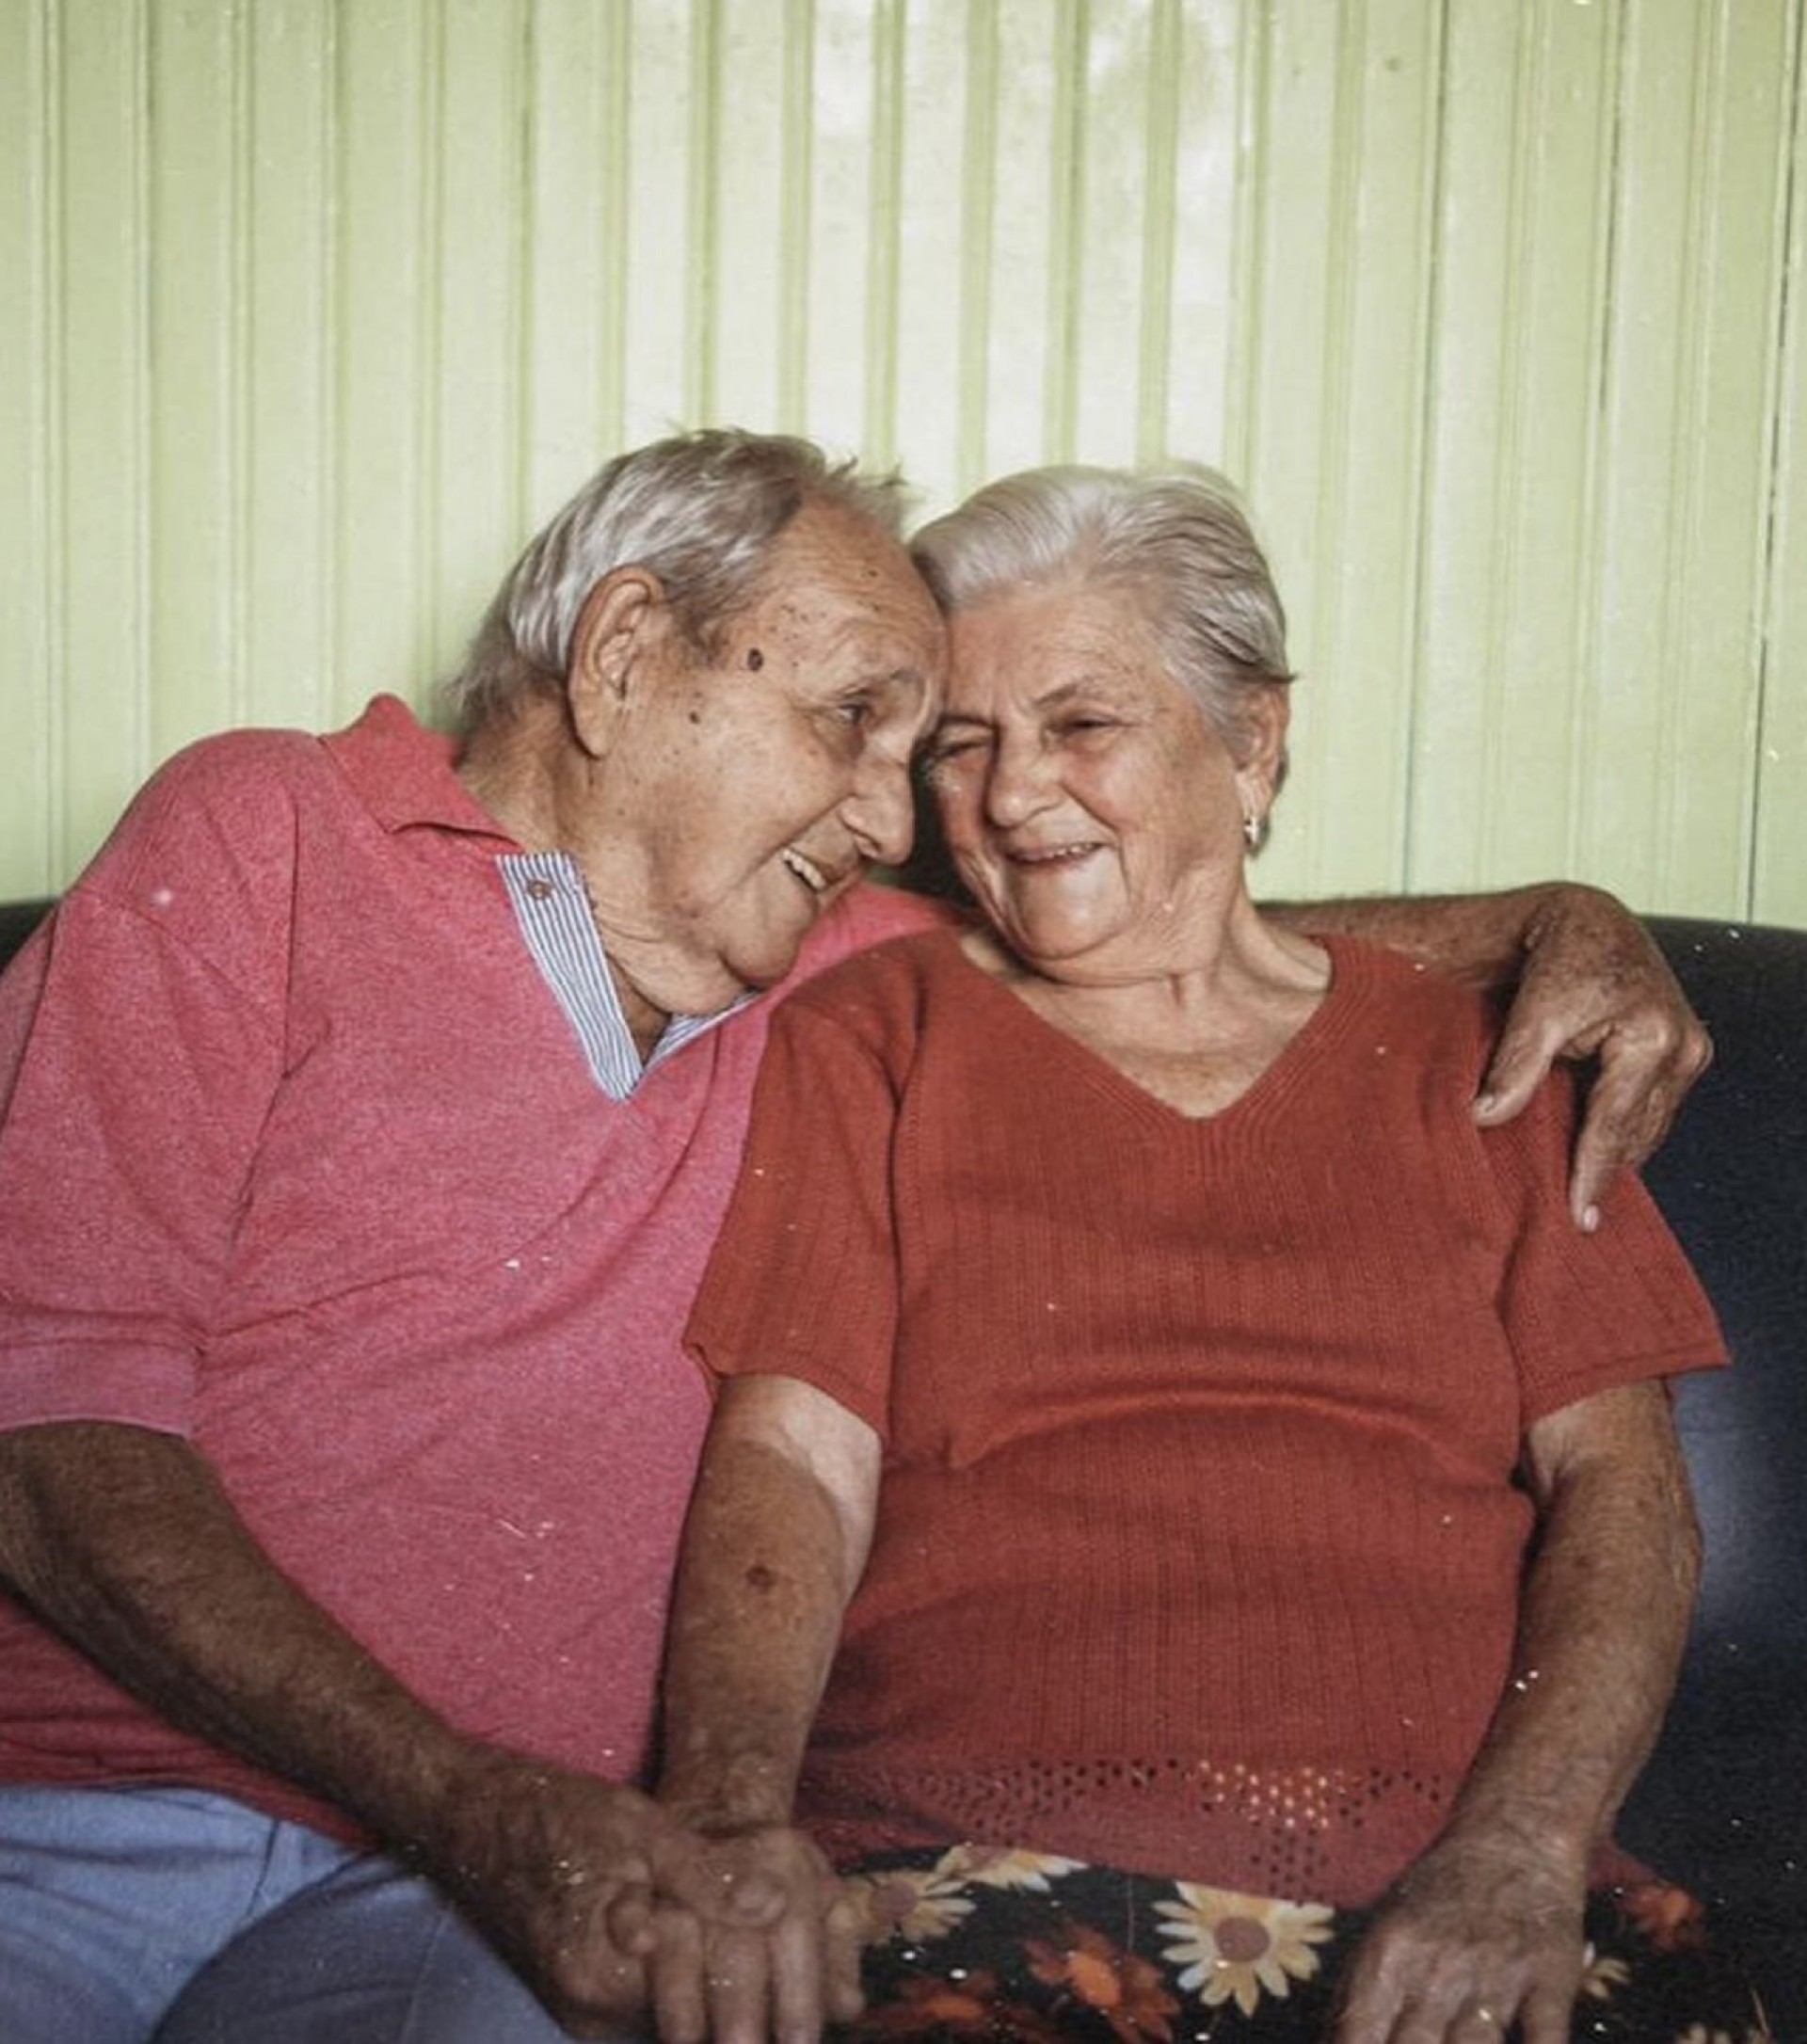 Casal de idosos que vende caldo de cana viraliza e acumula milhões de seguidores: 'Nossos netinhos'